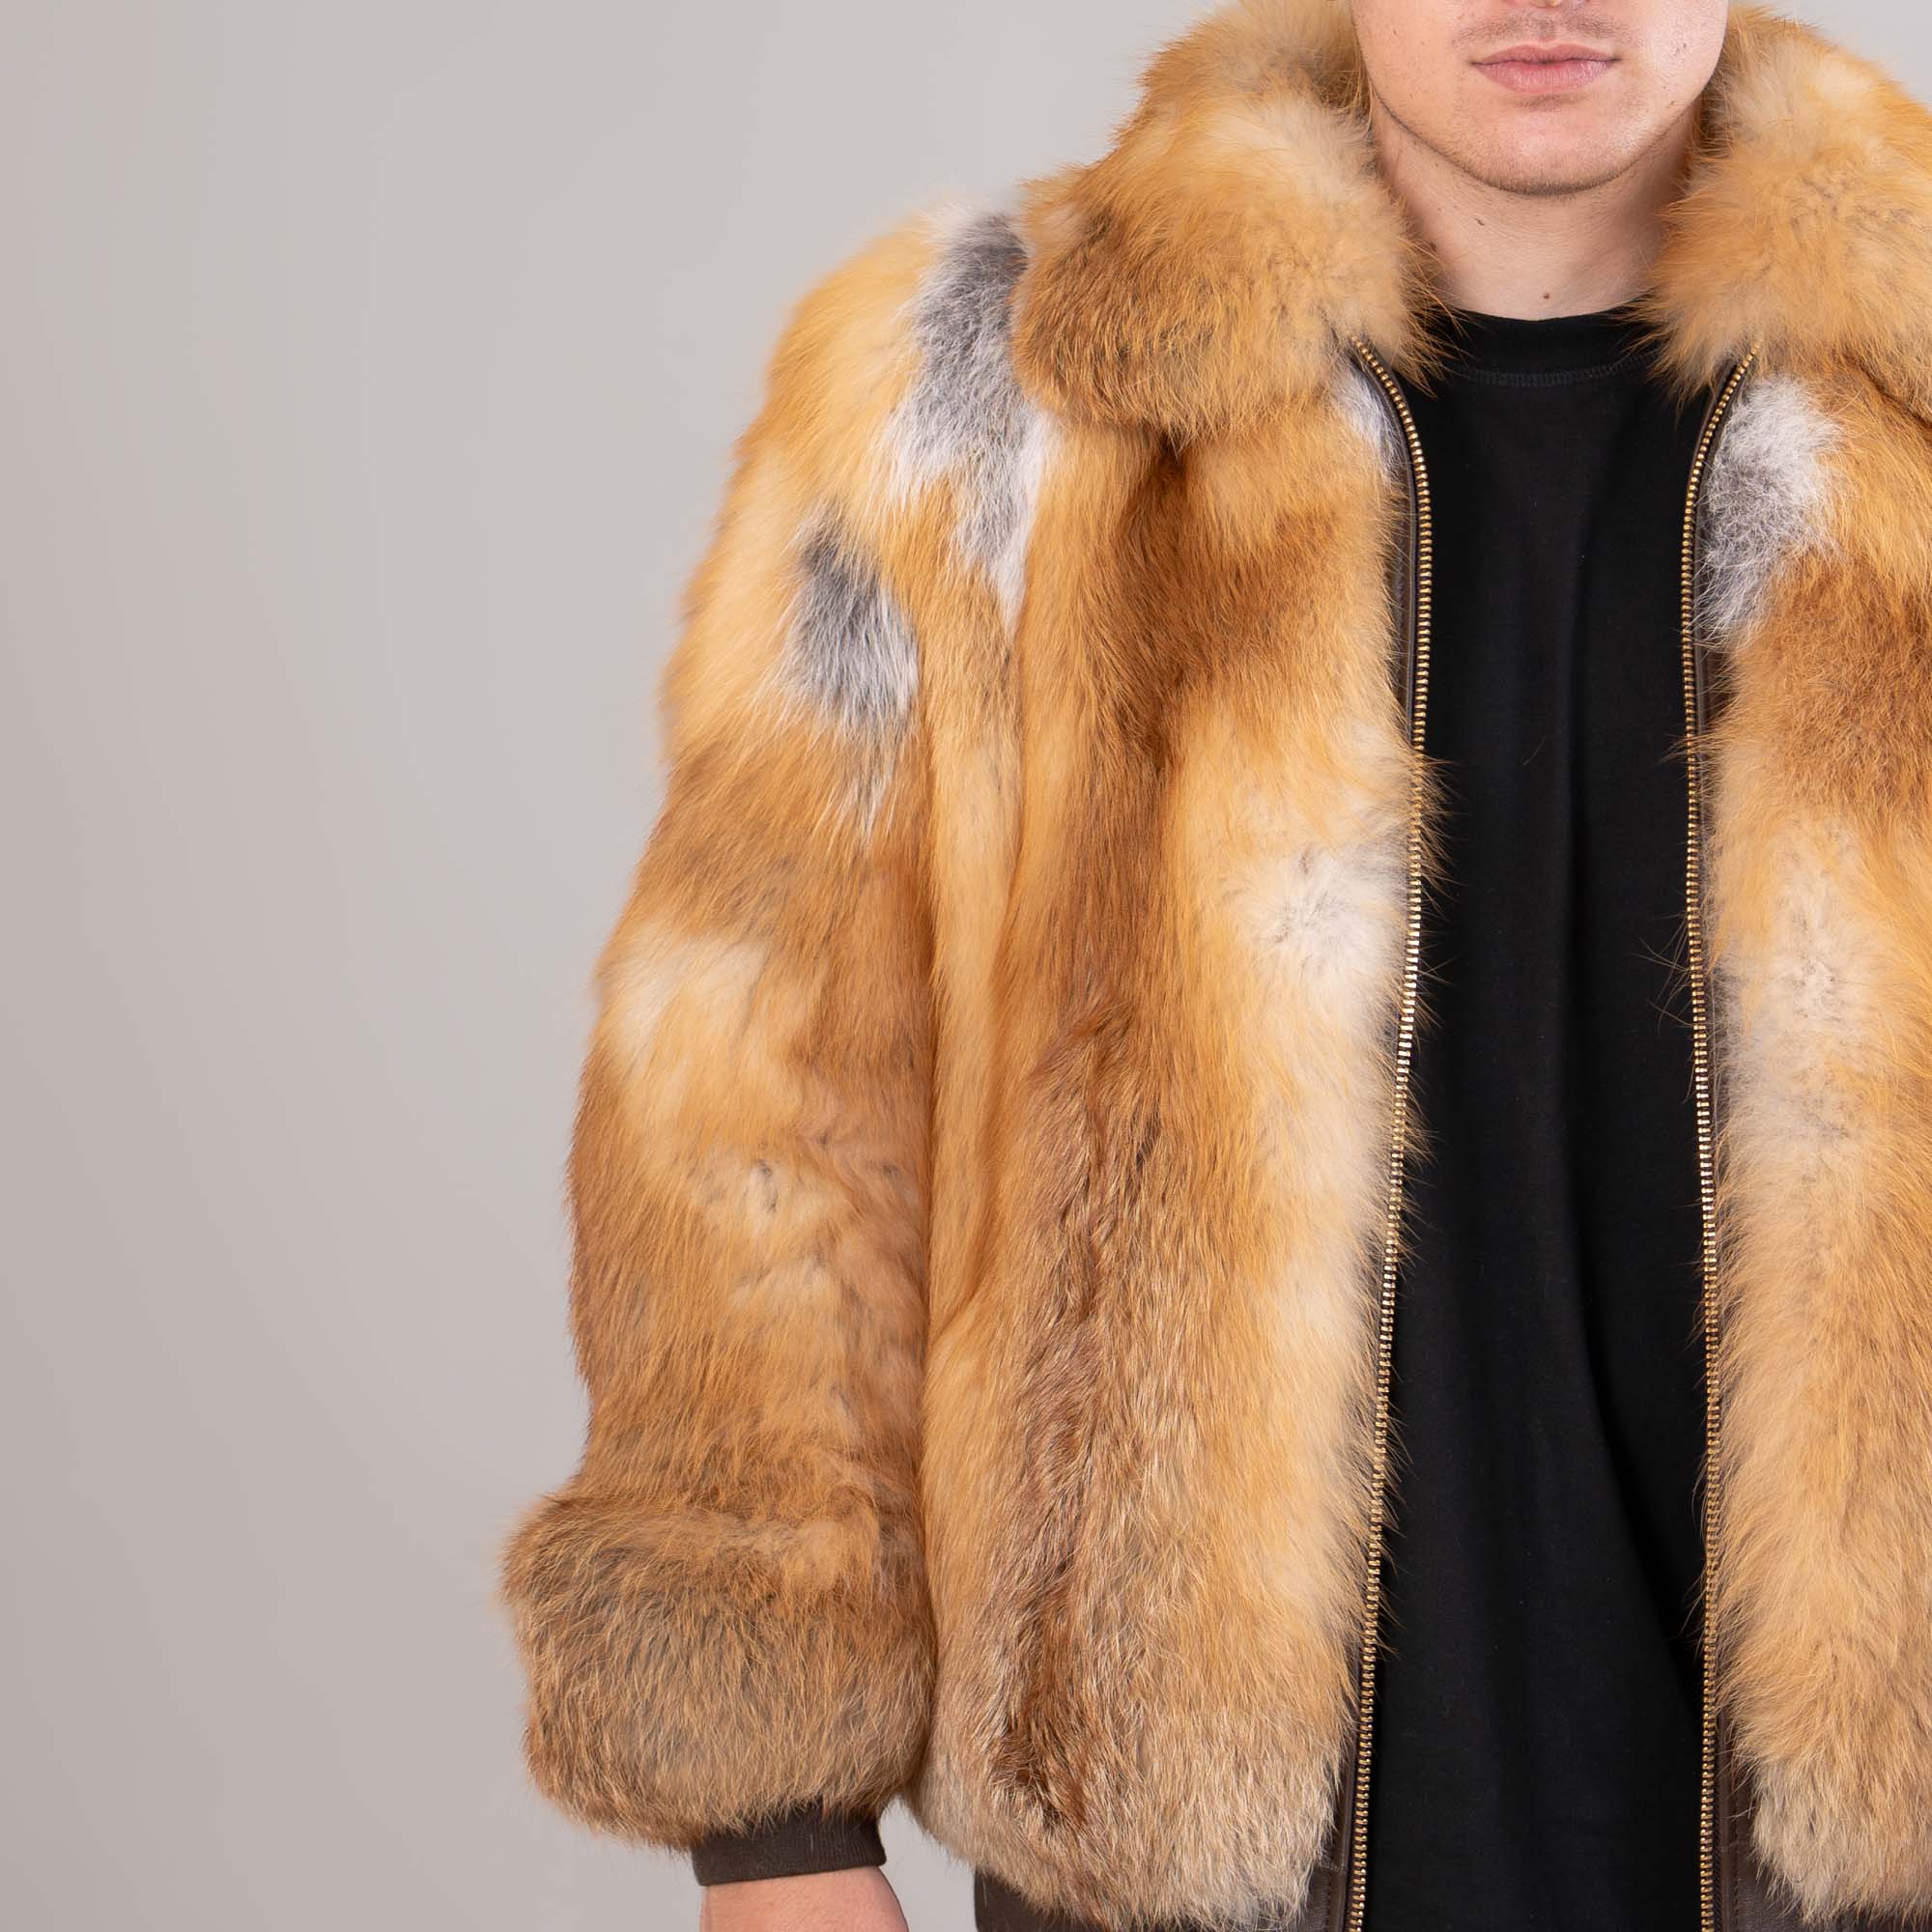 Men's fox fur jacket in golden color